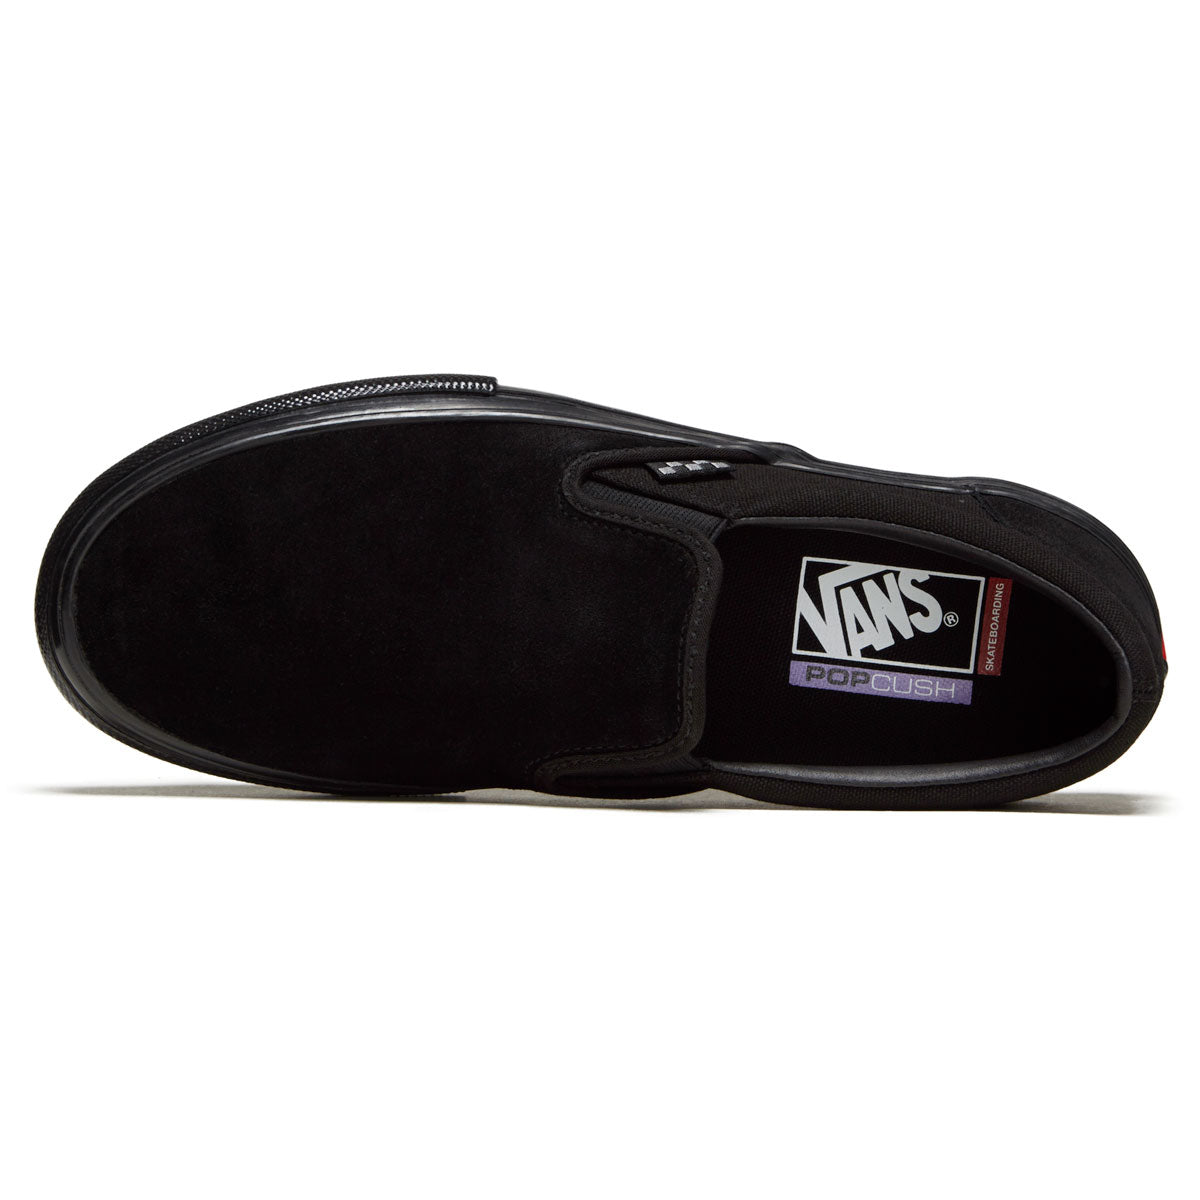 Vans Skate Slip-on Shoes - Black/Black image 3